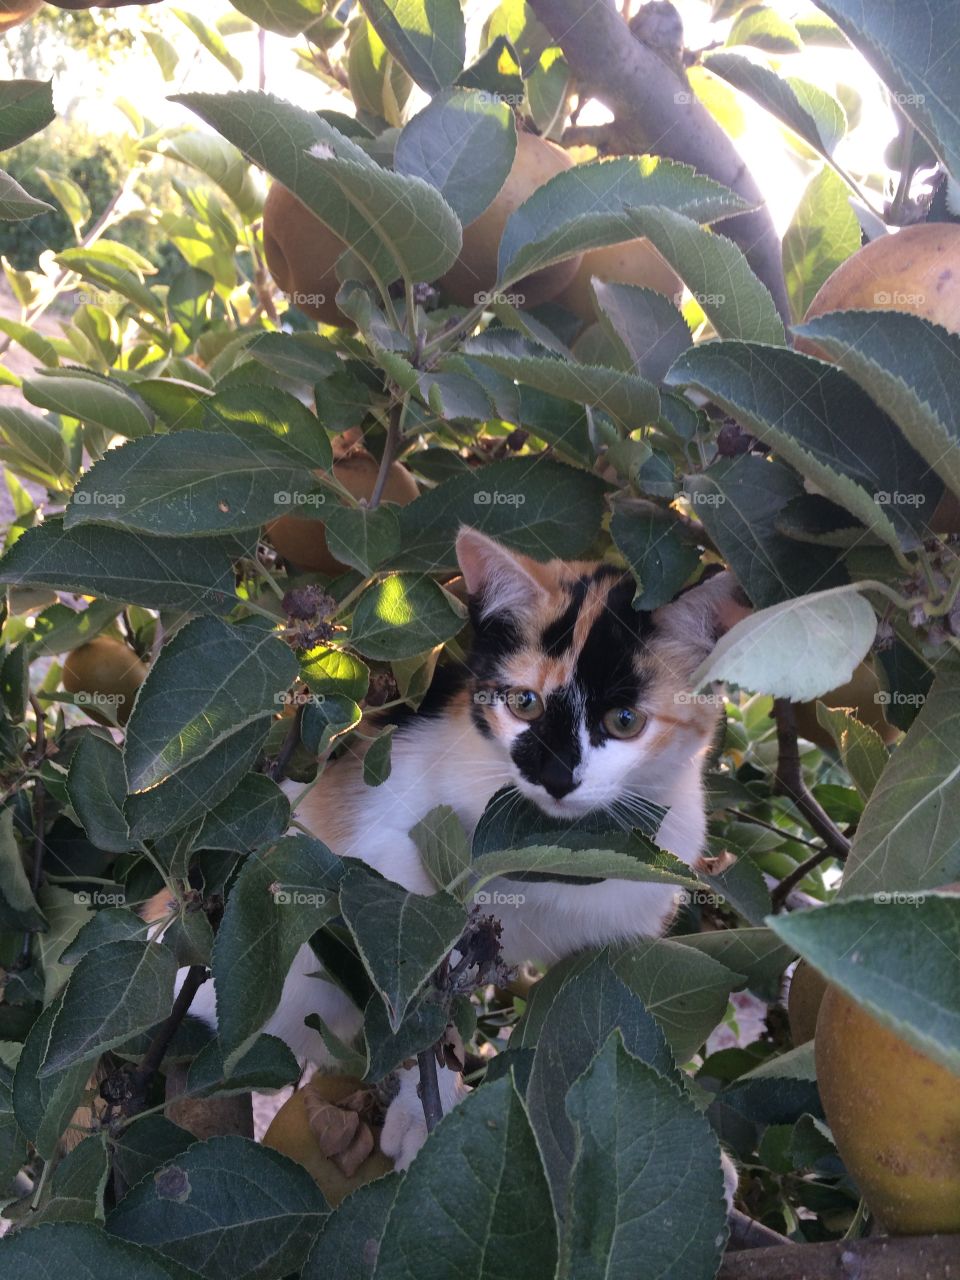 Cat climbing apple tree.